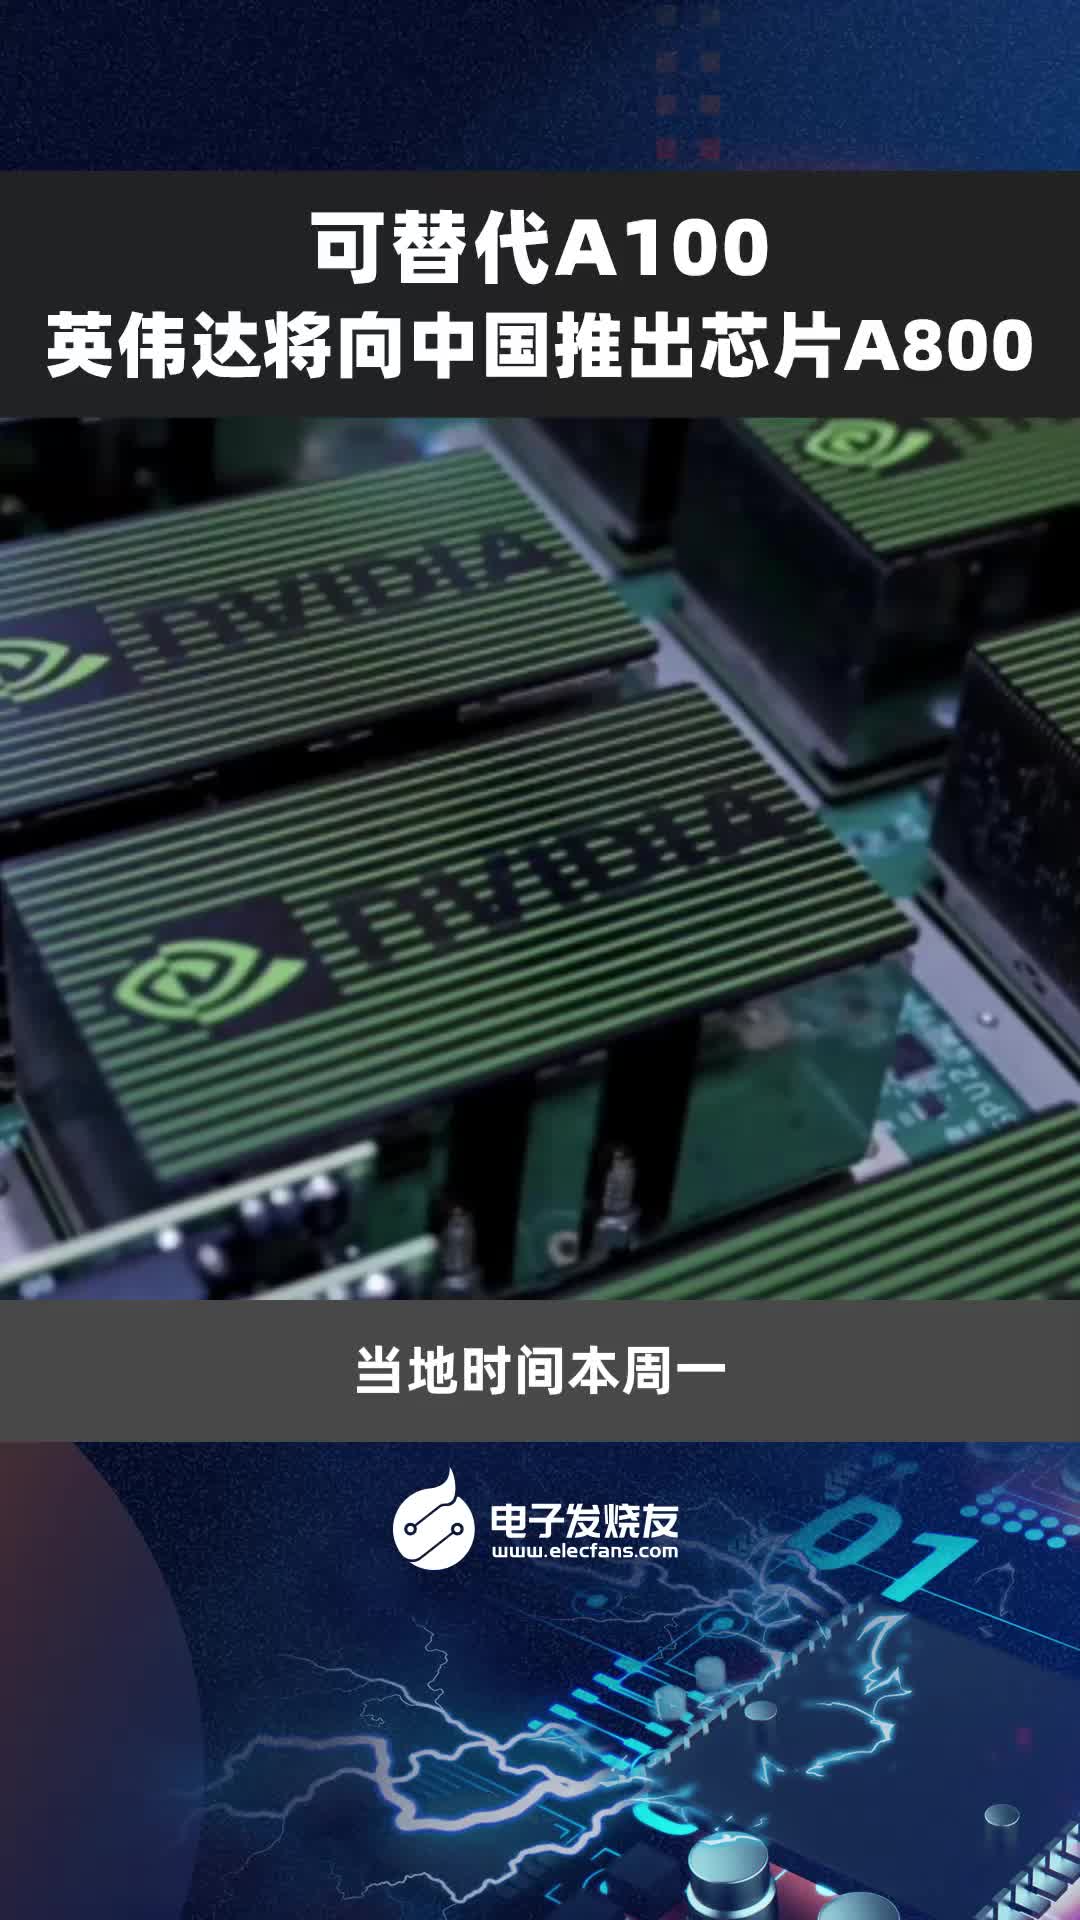 可替代A100，英伟达将向中国推出芯片A800